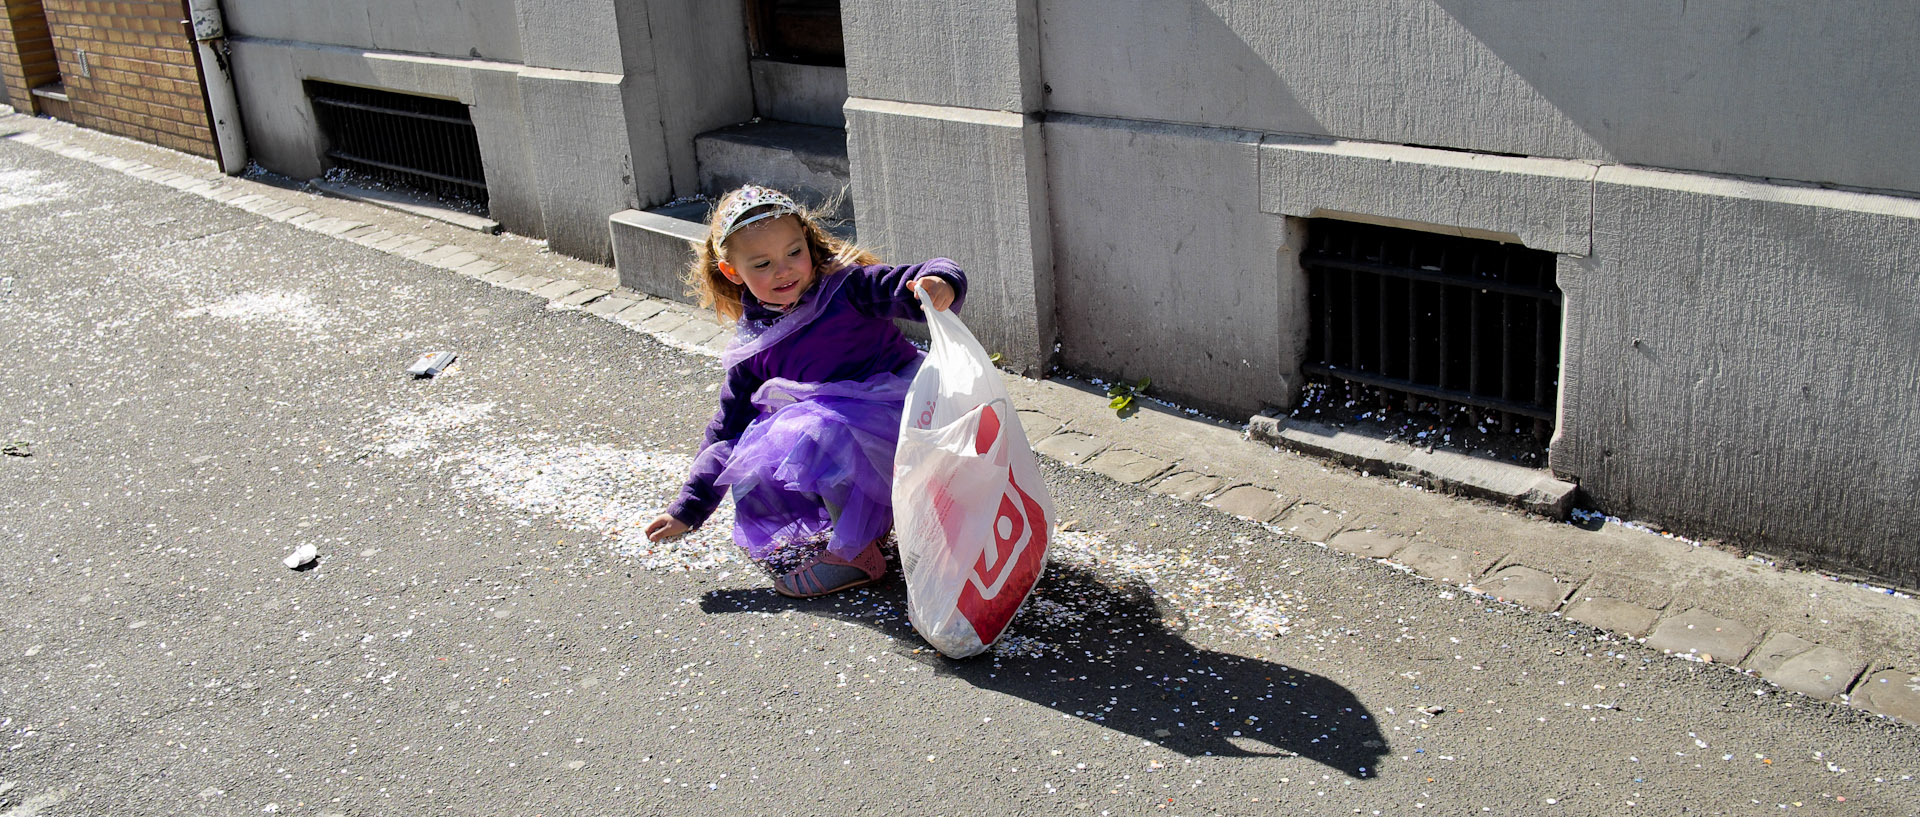 Petite fille costumée ramassant des confettis, rue Carnot, à Wattrelos.